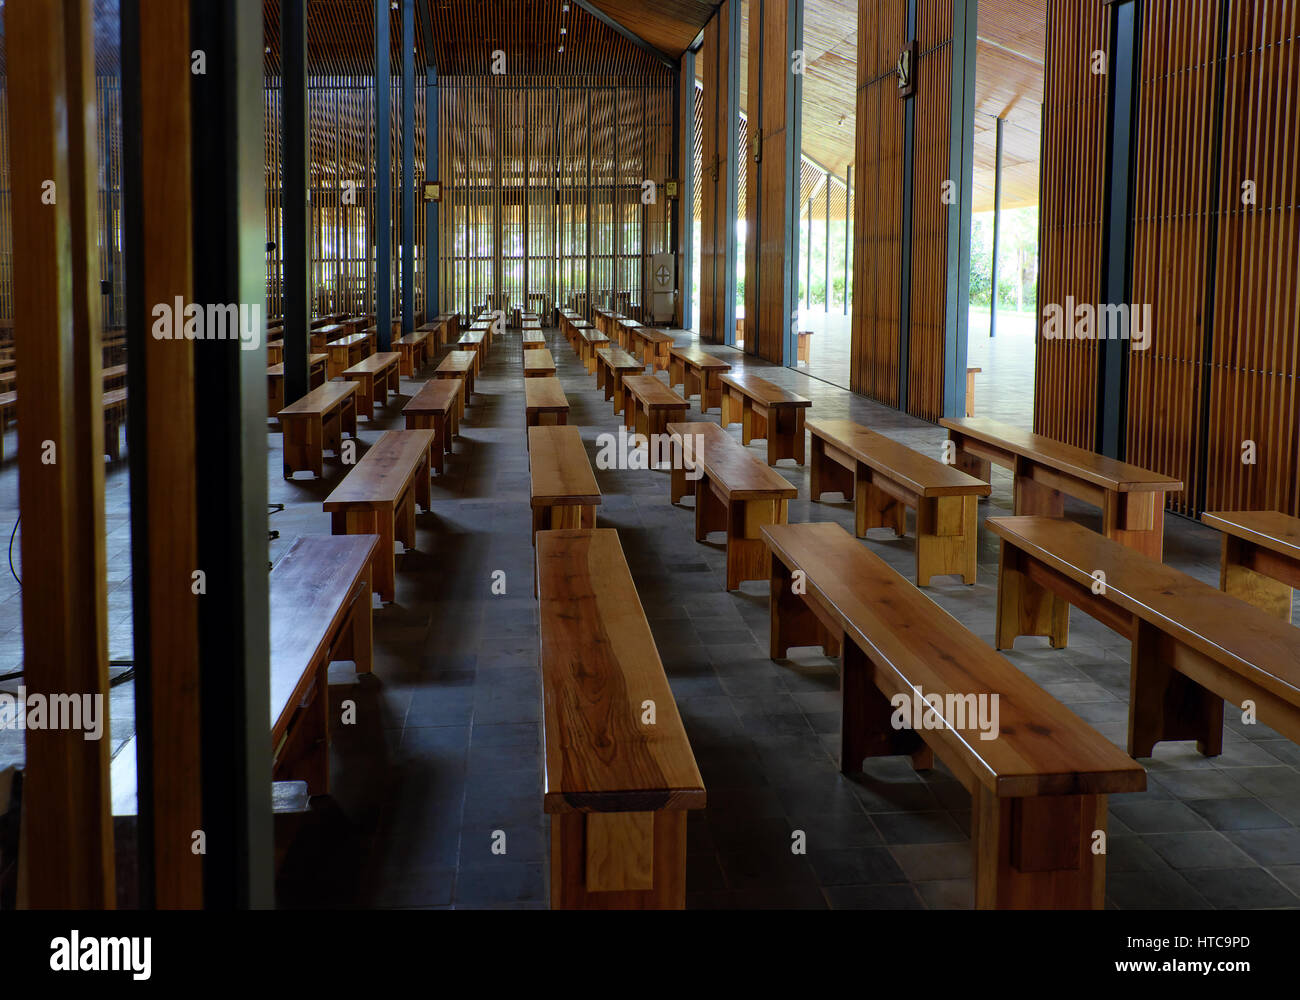 La fantastica architettura di interno Ka Don chiesa, Don Duong, Vietnam, Dalat campagna, Kadon cappella di legno, utilizzare la luce naturale in modo rispettoso dell'ambiente Foto Stock